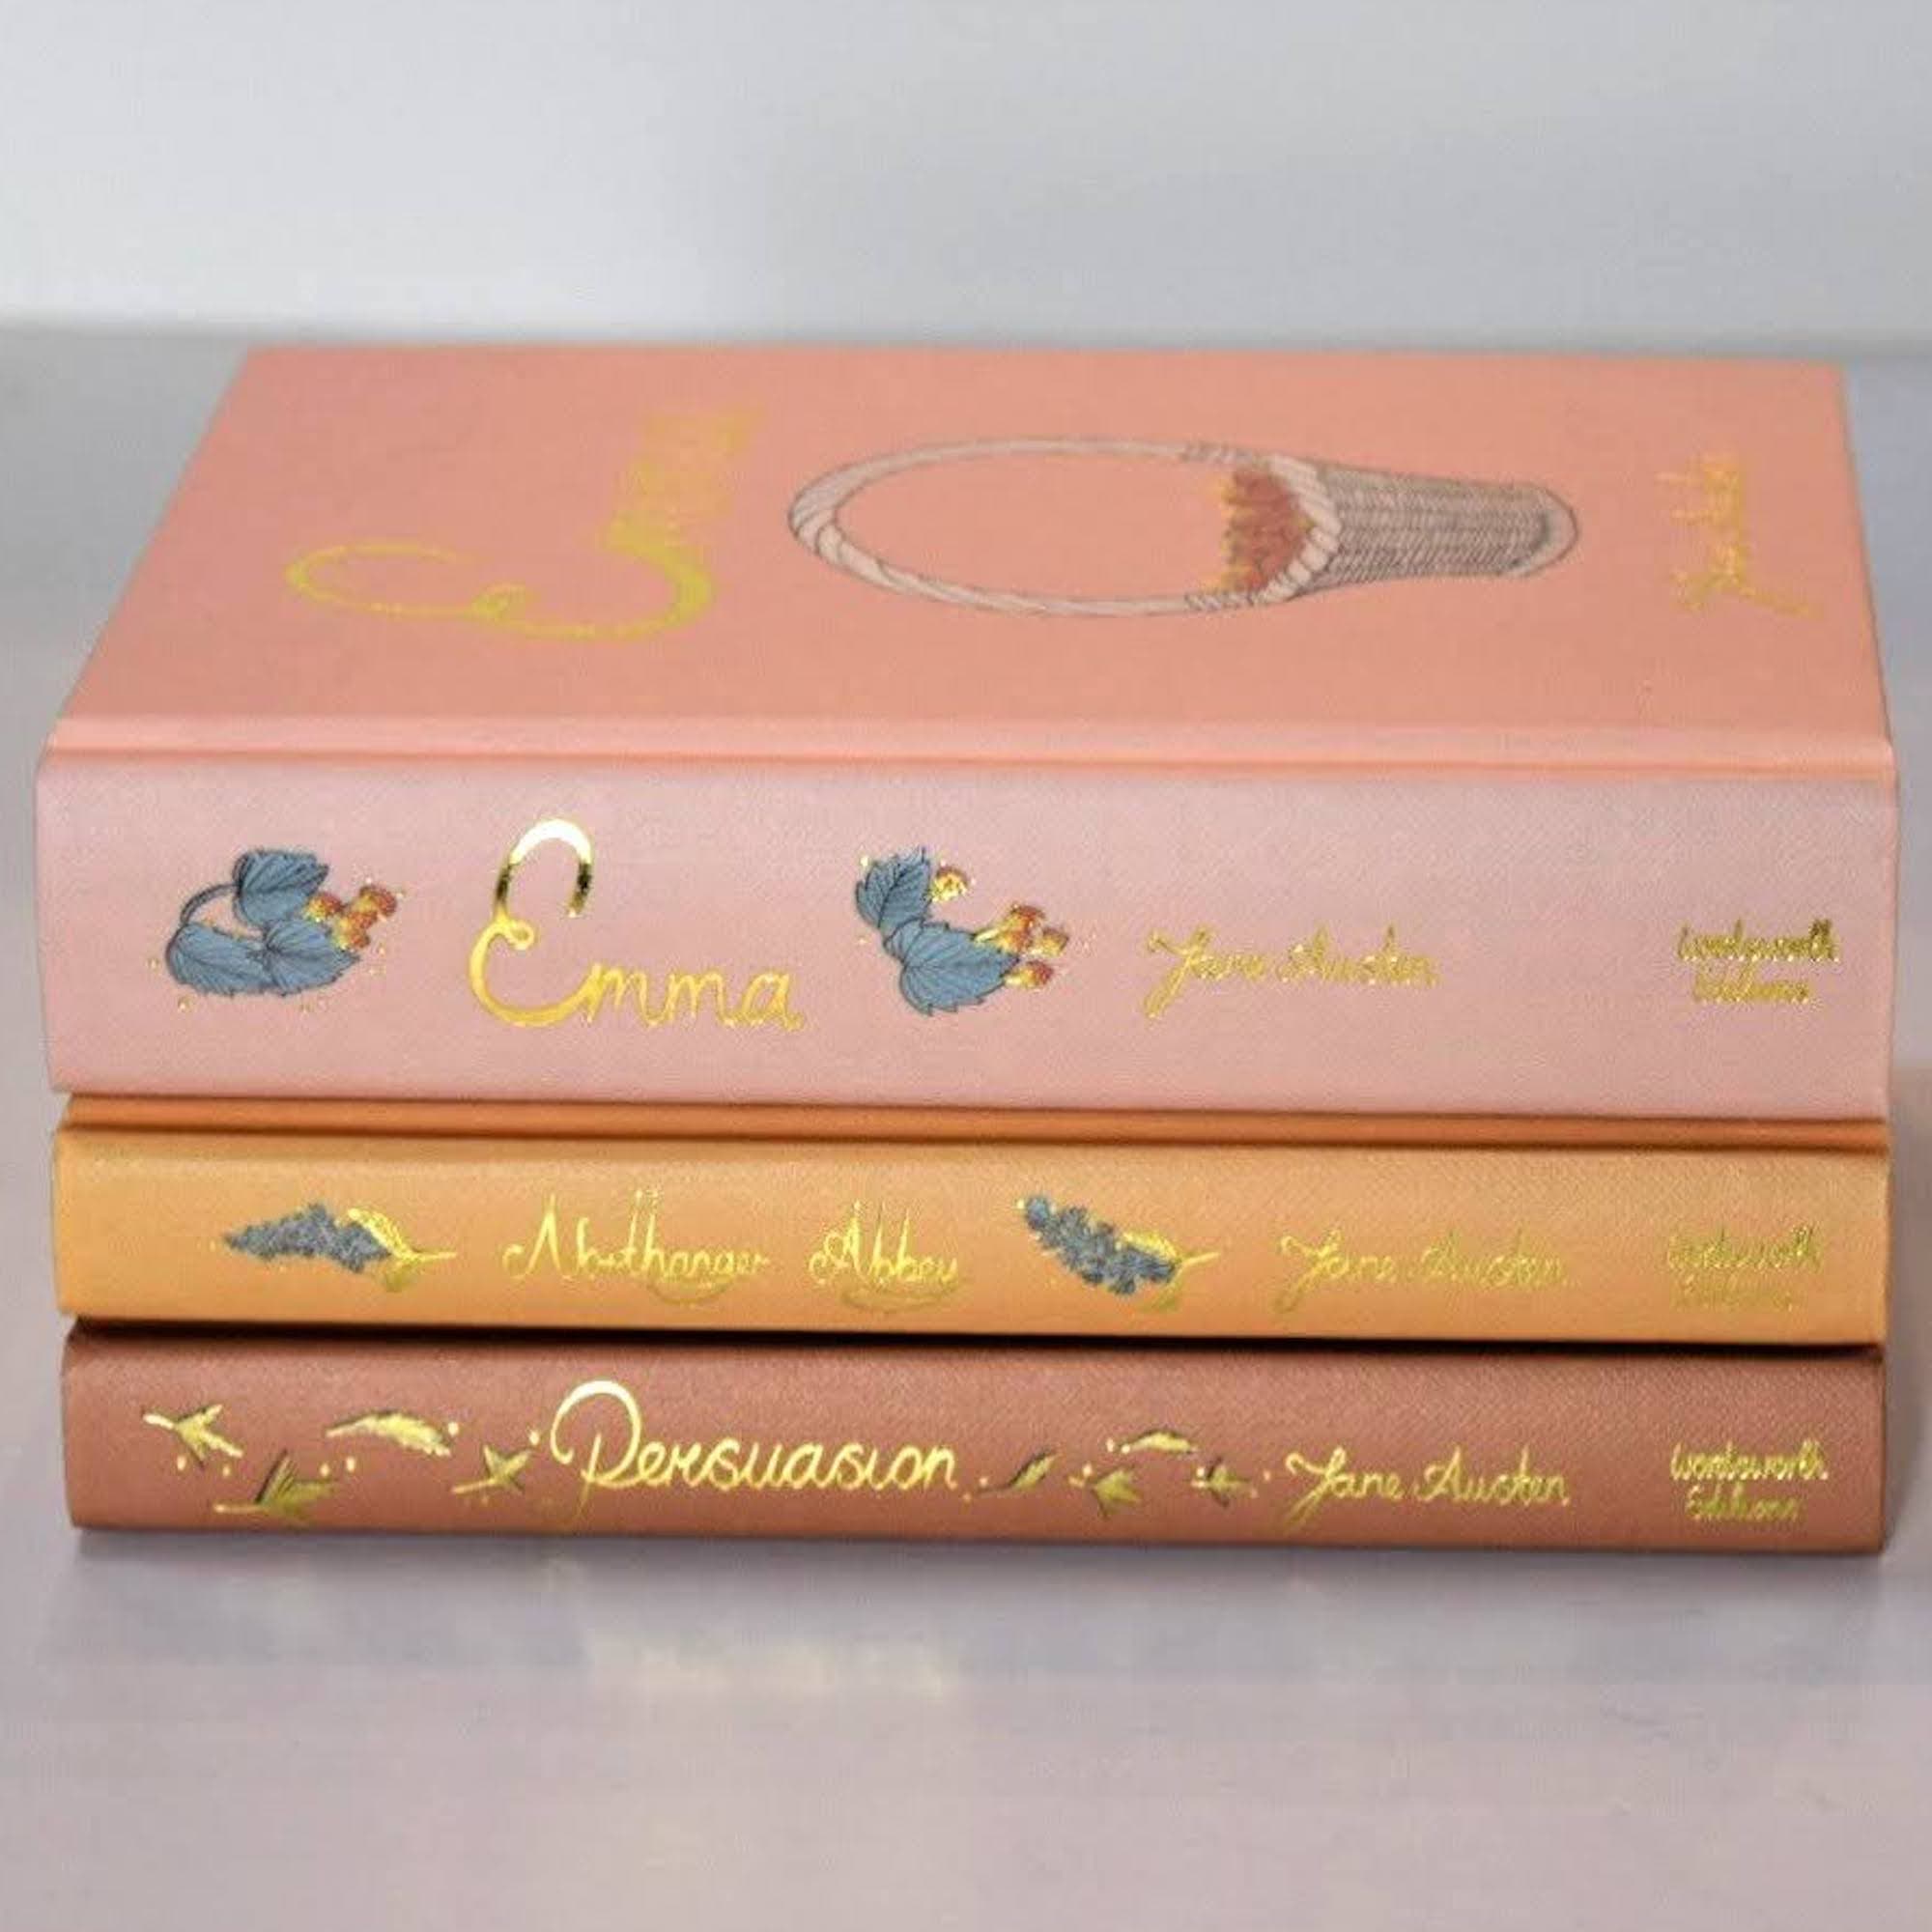 Jane Austen Collection Vol. 2 .2